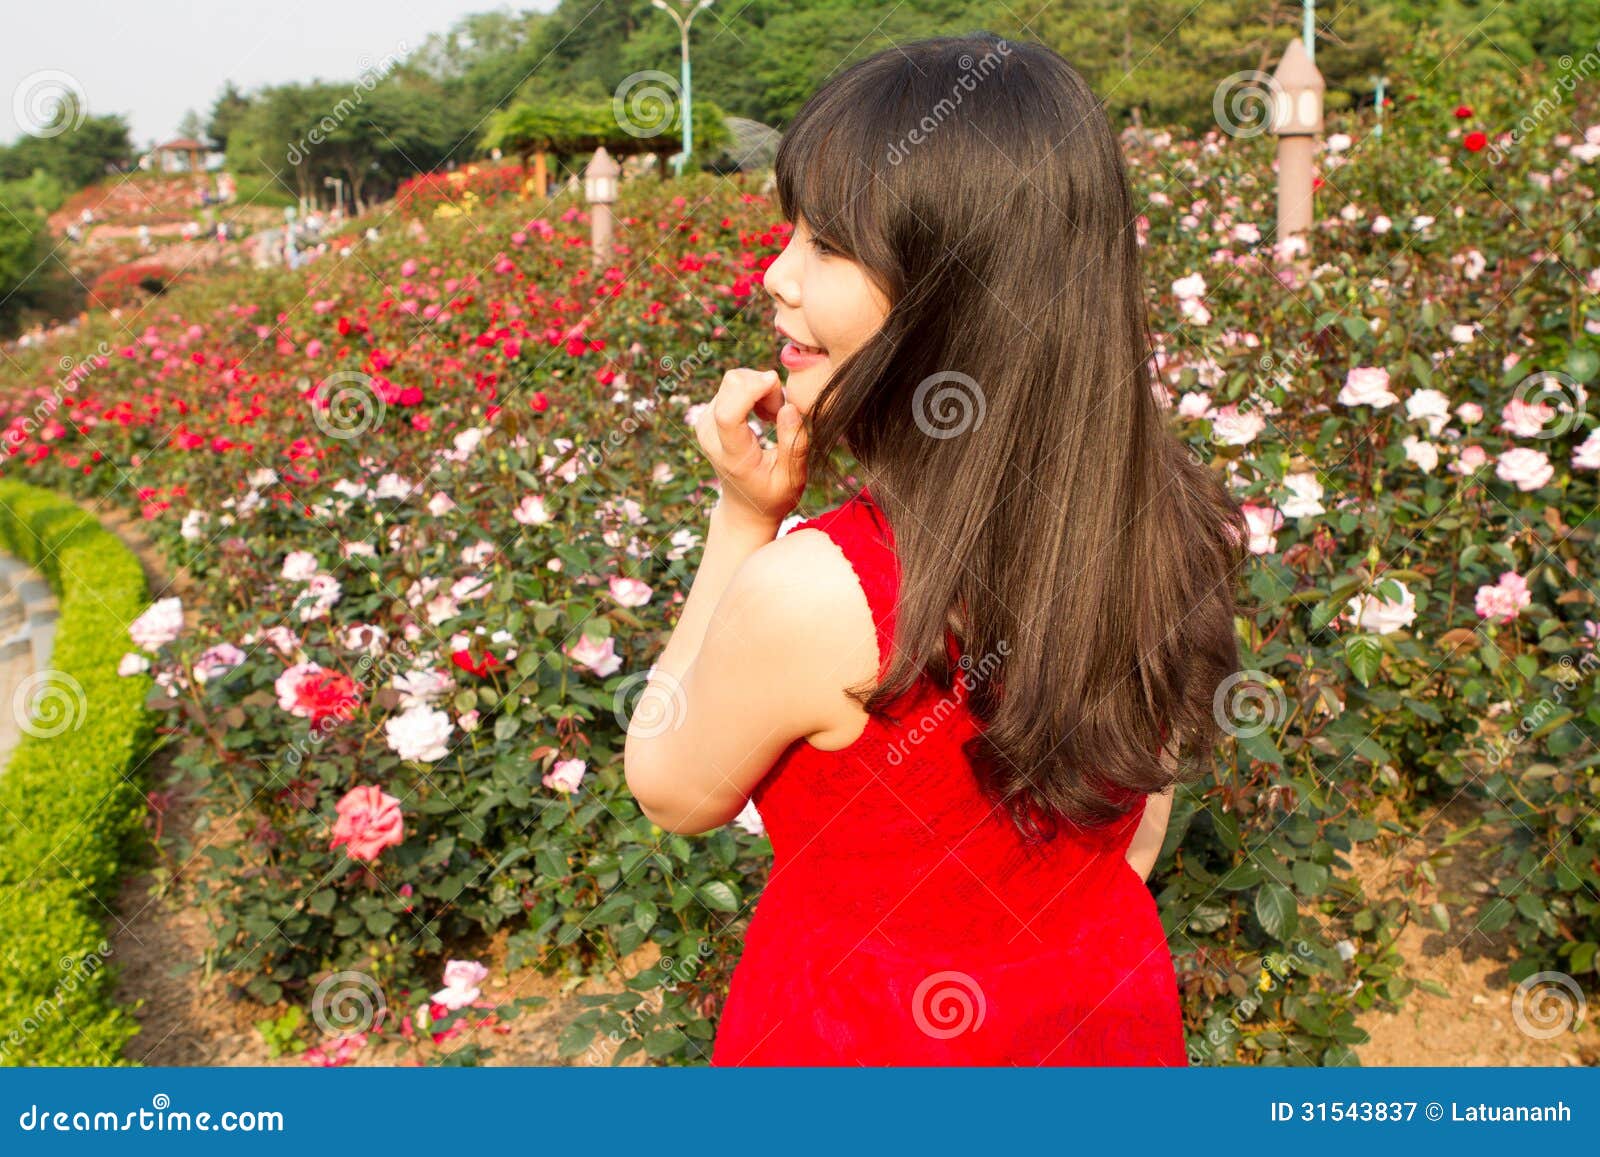 女孩在玫瑰园里微笑. 象玫瑰她美丽